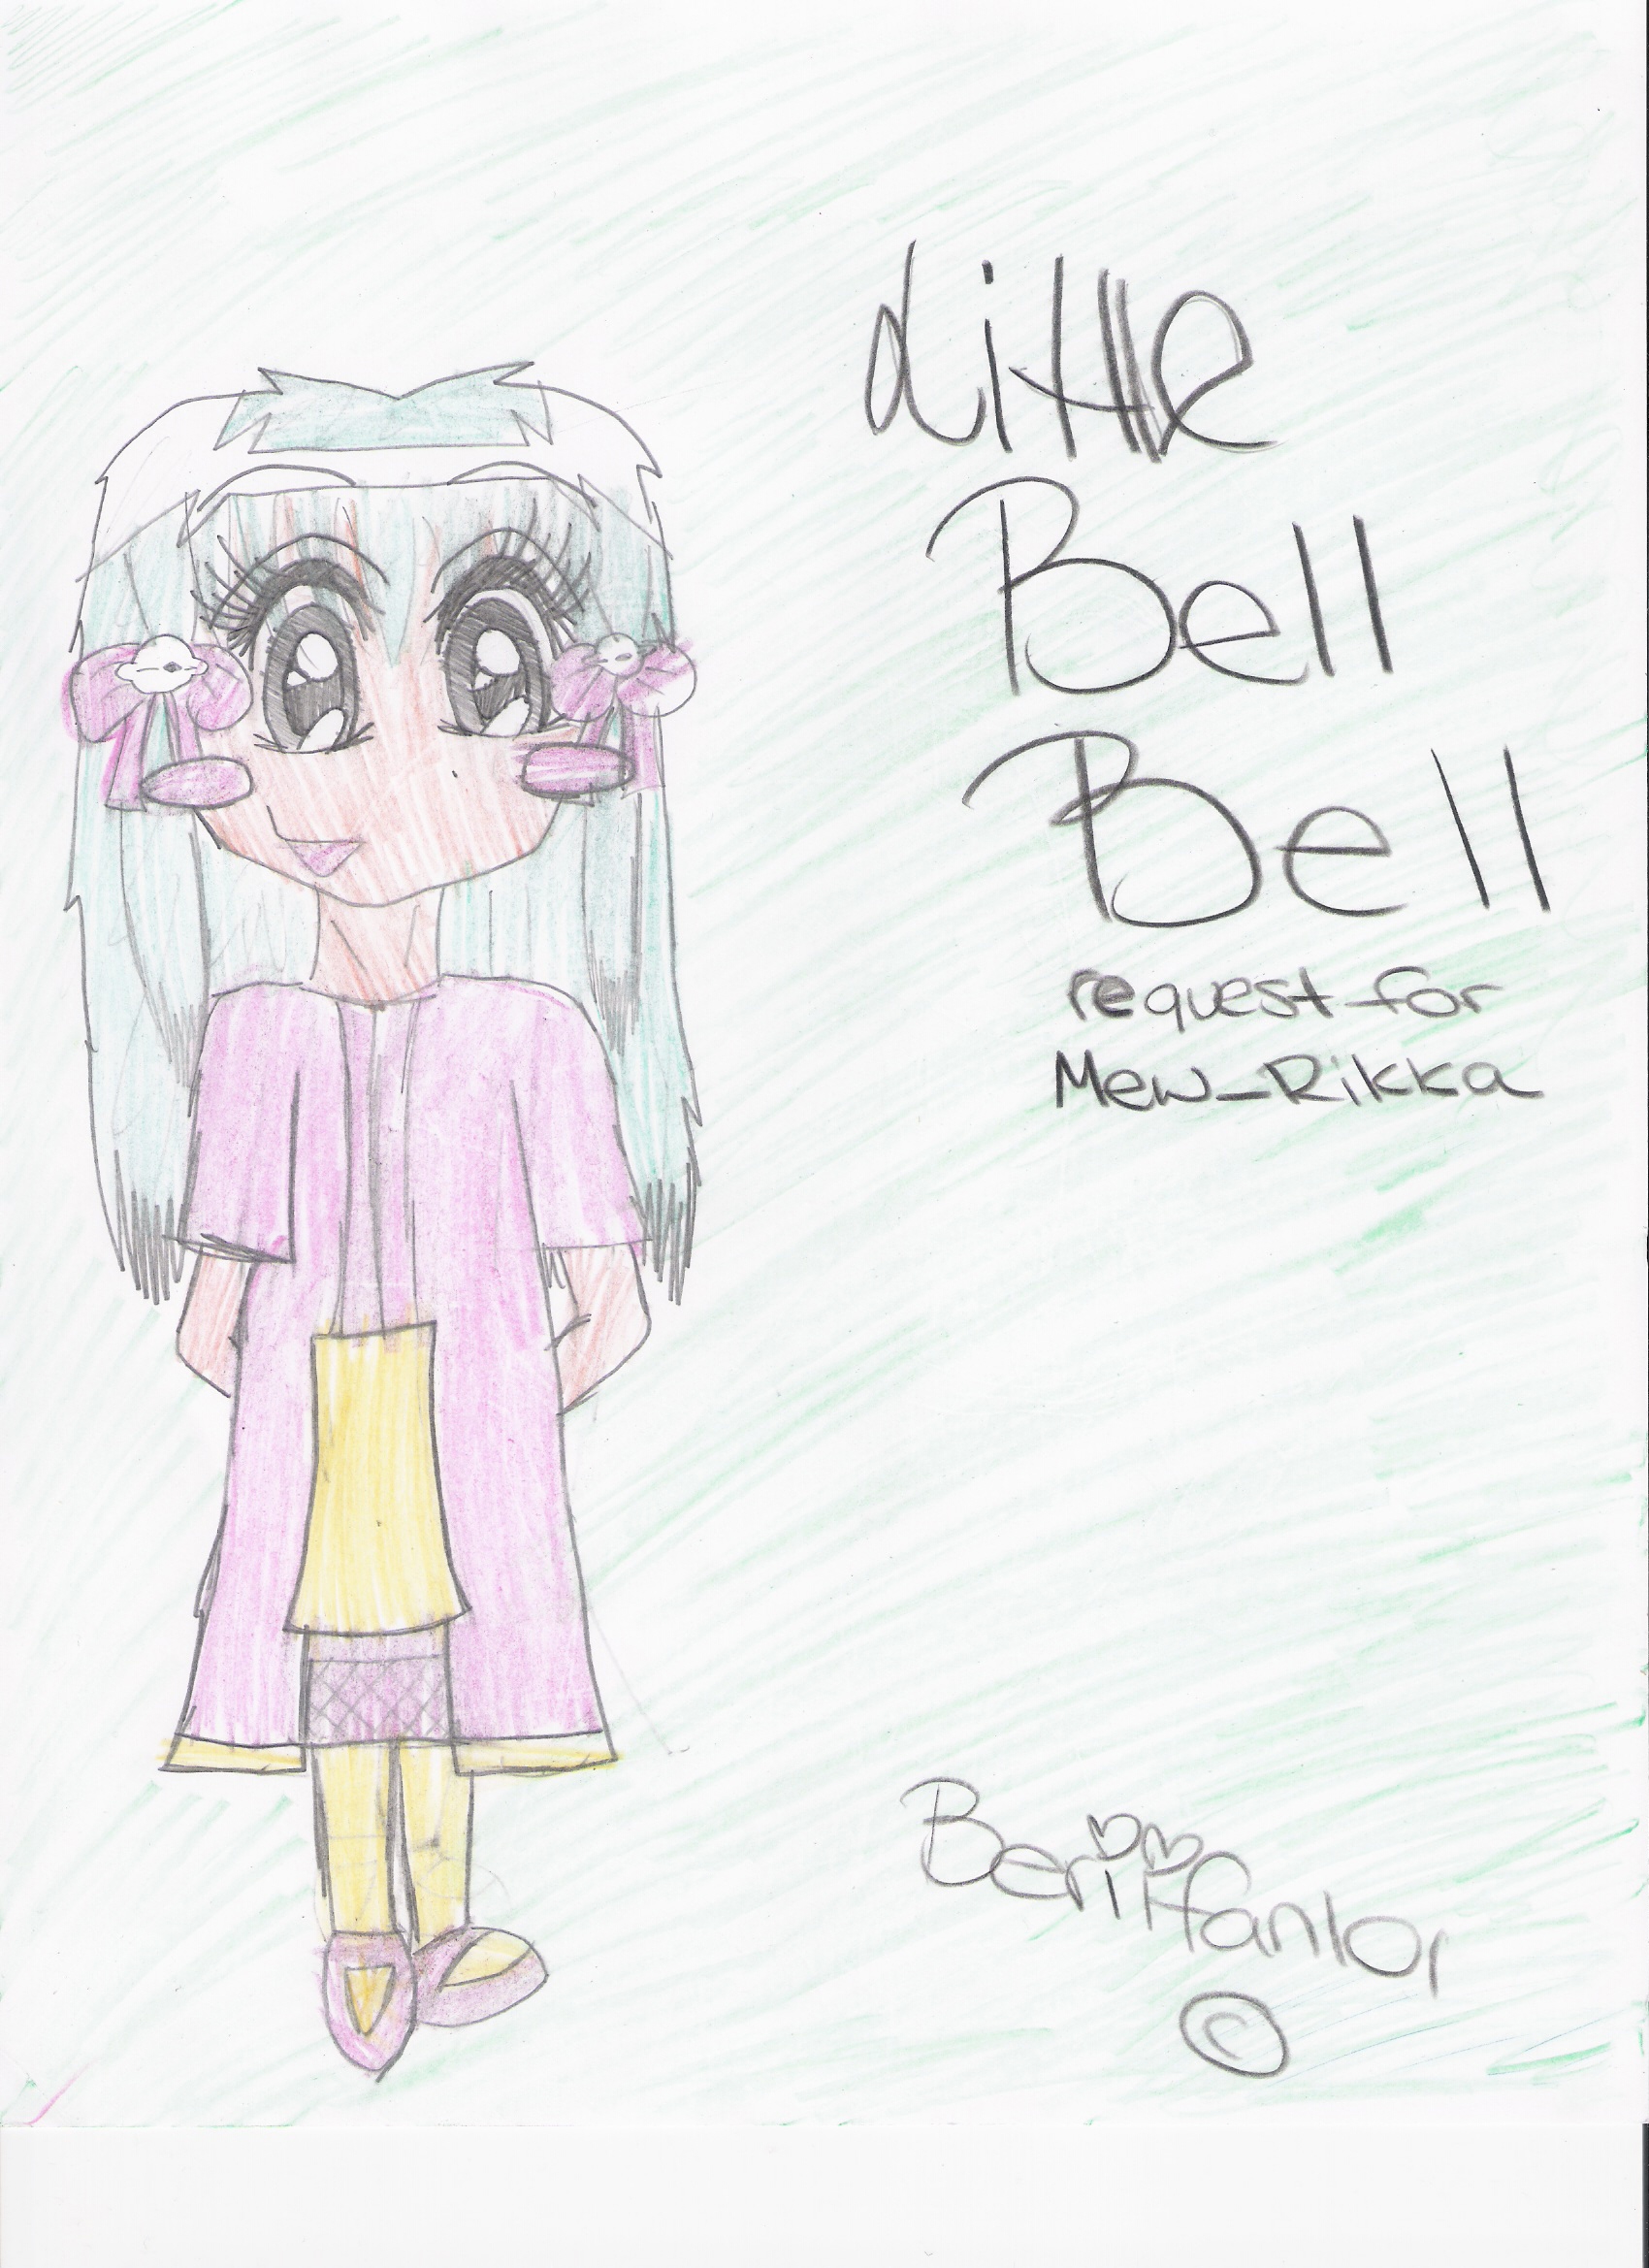 little Bell Bell request for Mew_Rikka by beriifan101